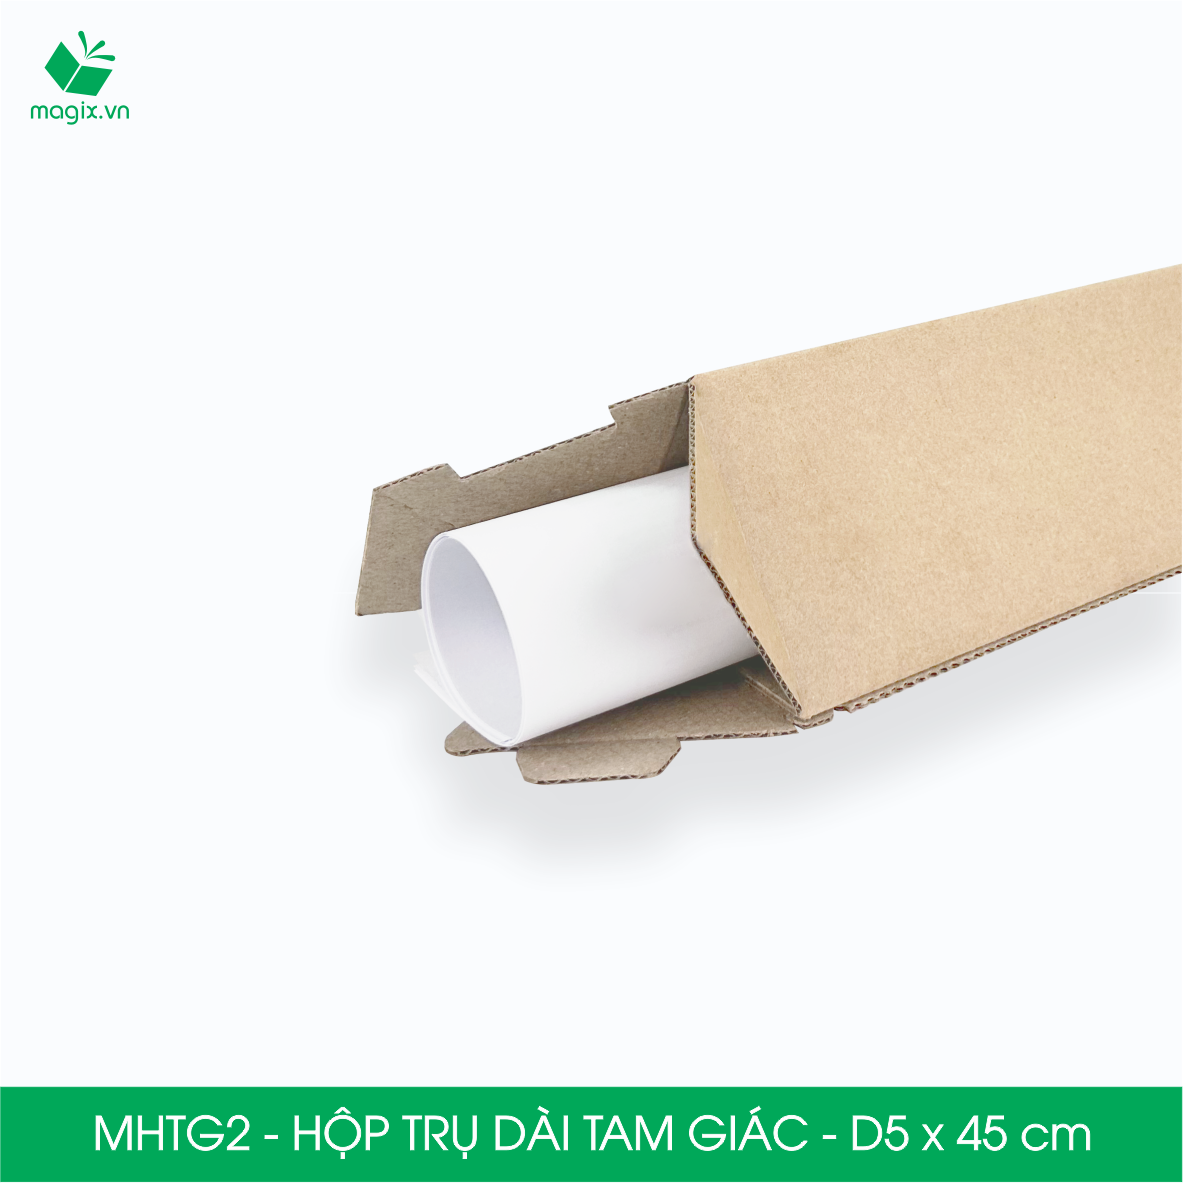 MHTG2 - D5x45 cm - 10 Hộp trụ dài tam giác thay thế ống giấy - Hộp carton đóng gói hàng